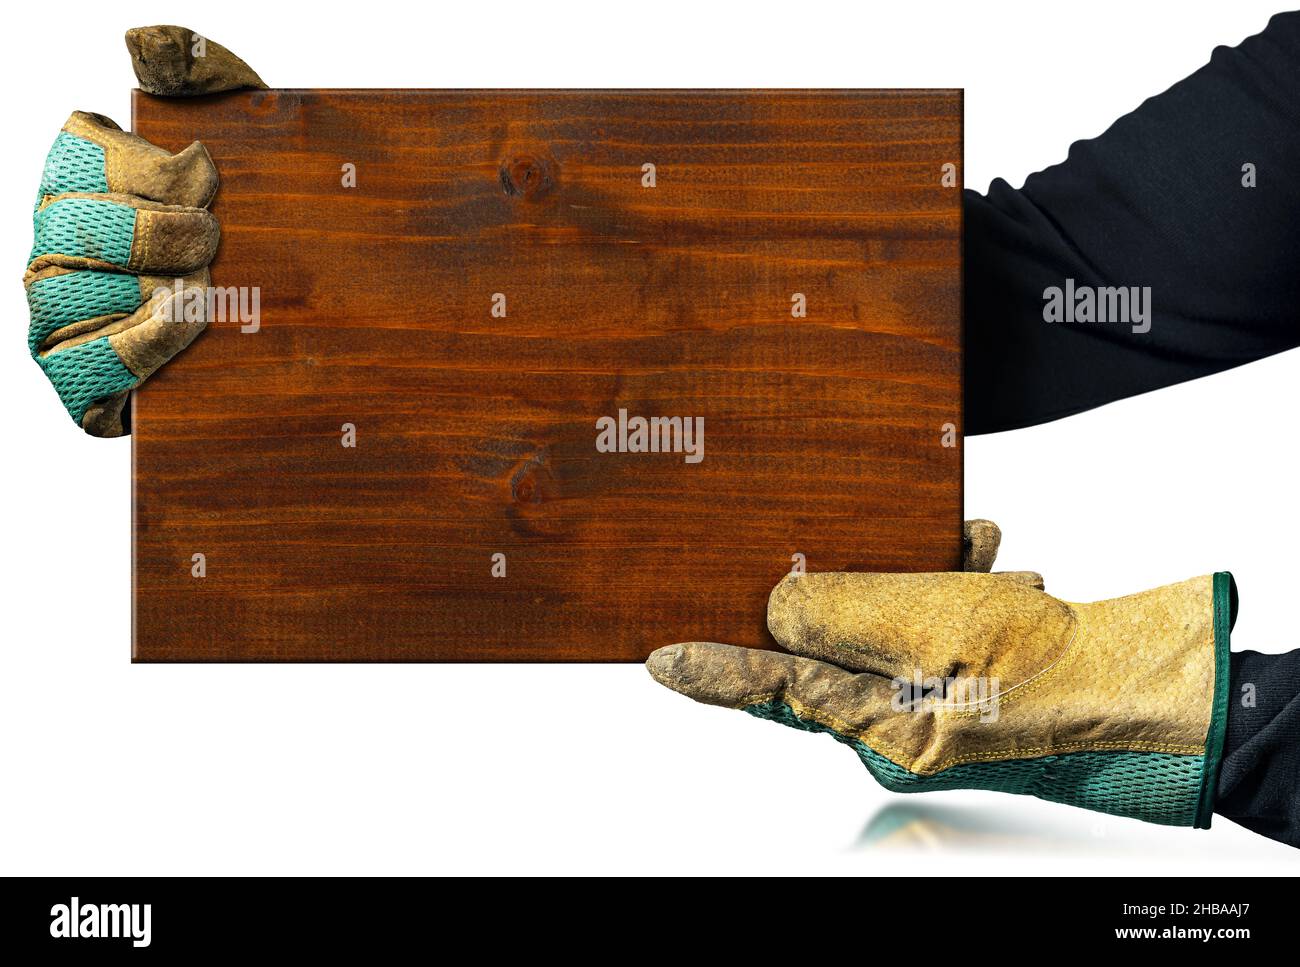 Carpentiere con guanti da lavoro protettivi che reggono una tavola di legno marrone isolata su sfondo bianco. Foto Stock